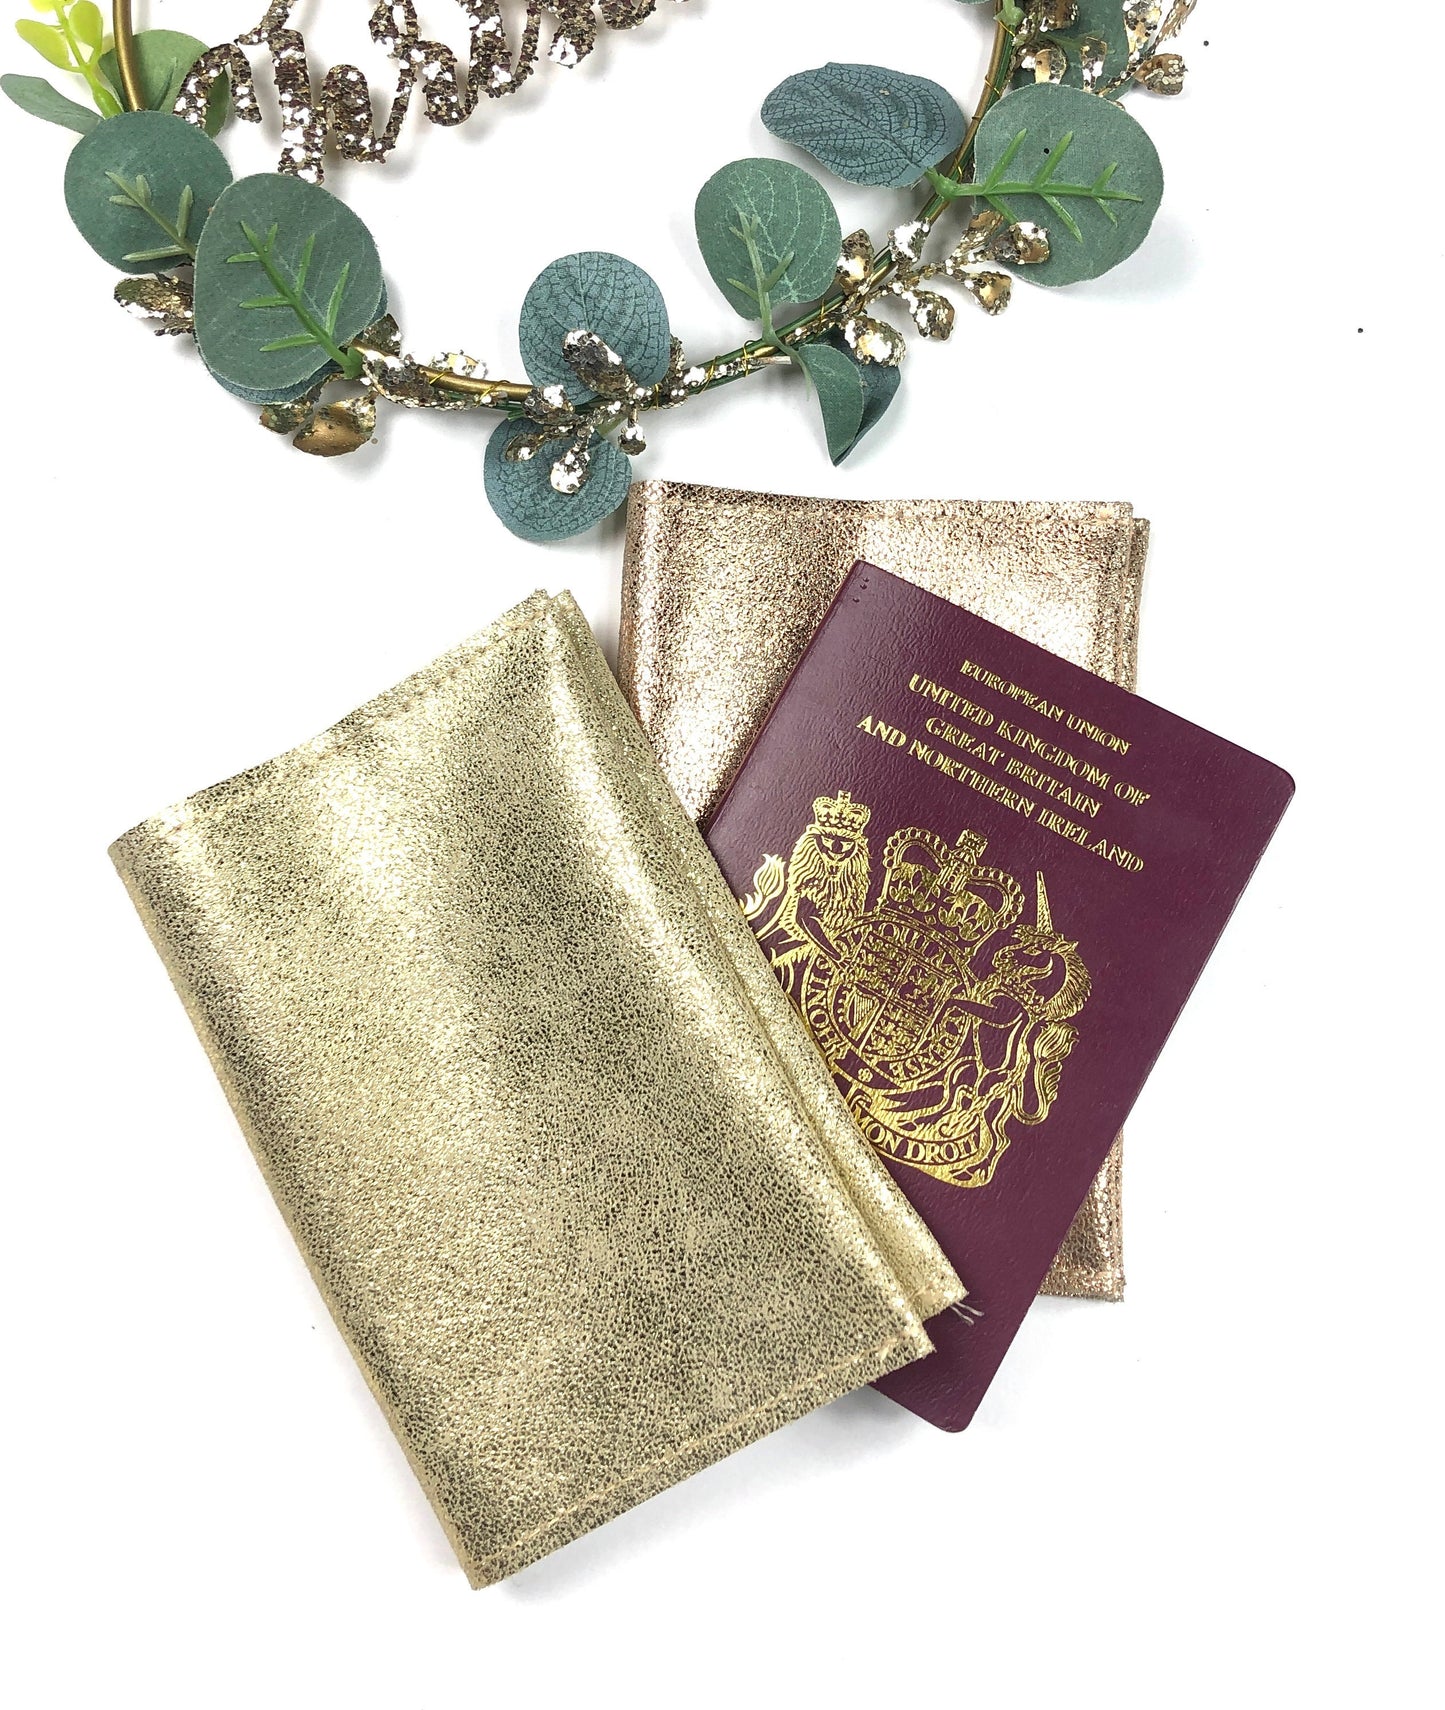 Protège passeport en cuir métallisé porte passeport doré cadeau noel unique maman étui passeport original  cadeau amoureux voyage